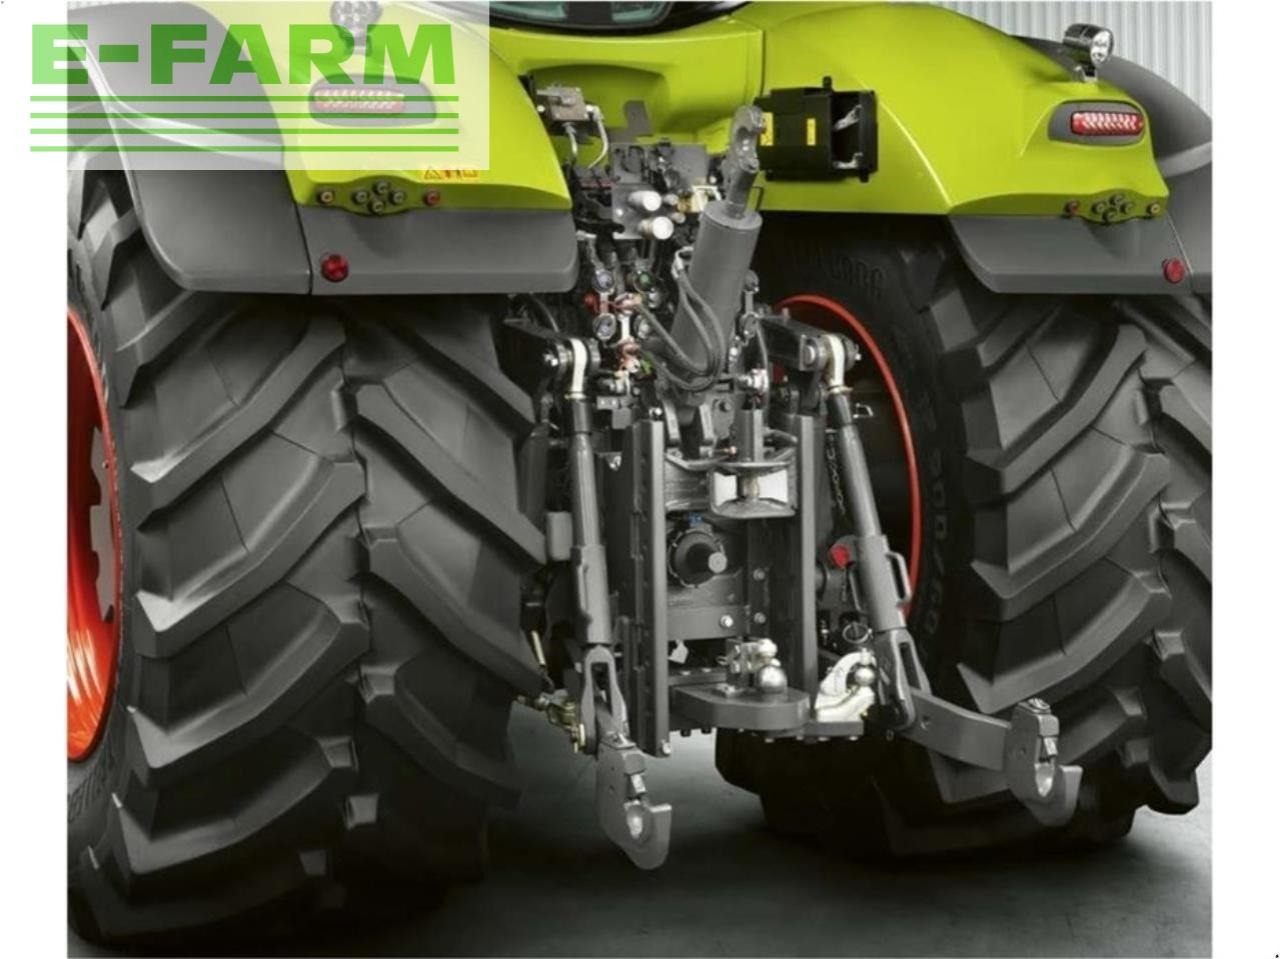 Tracteur agricole CLAAS axion 960 cmatic cebis